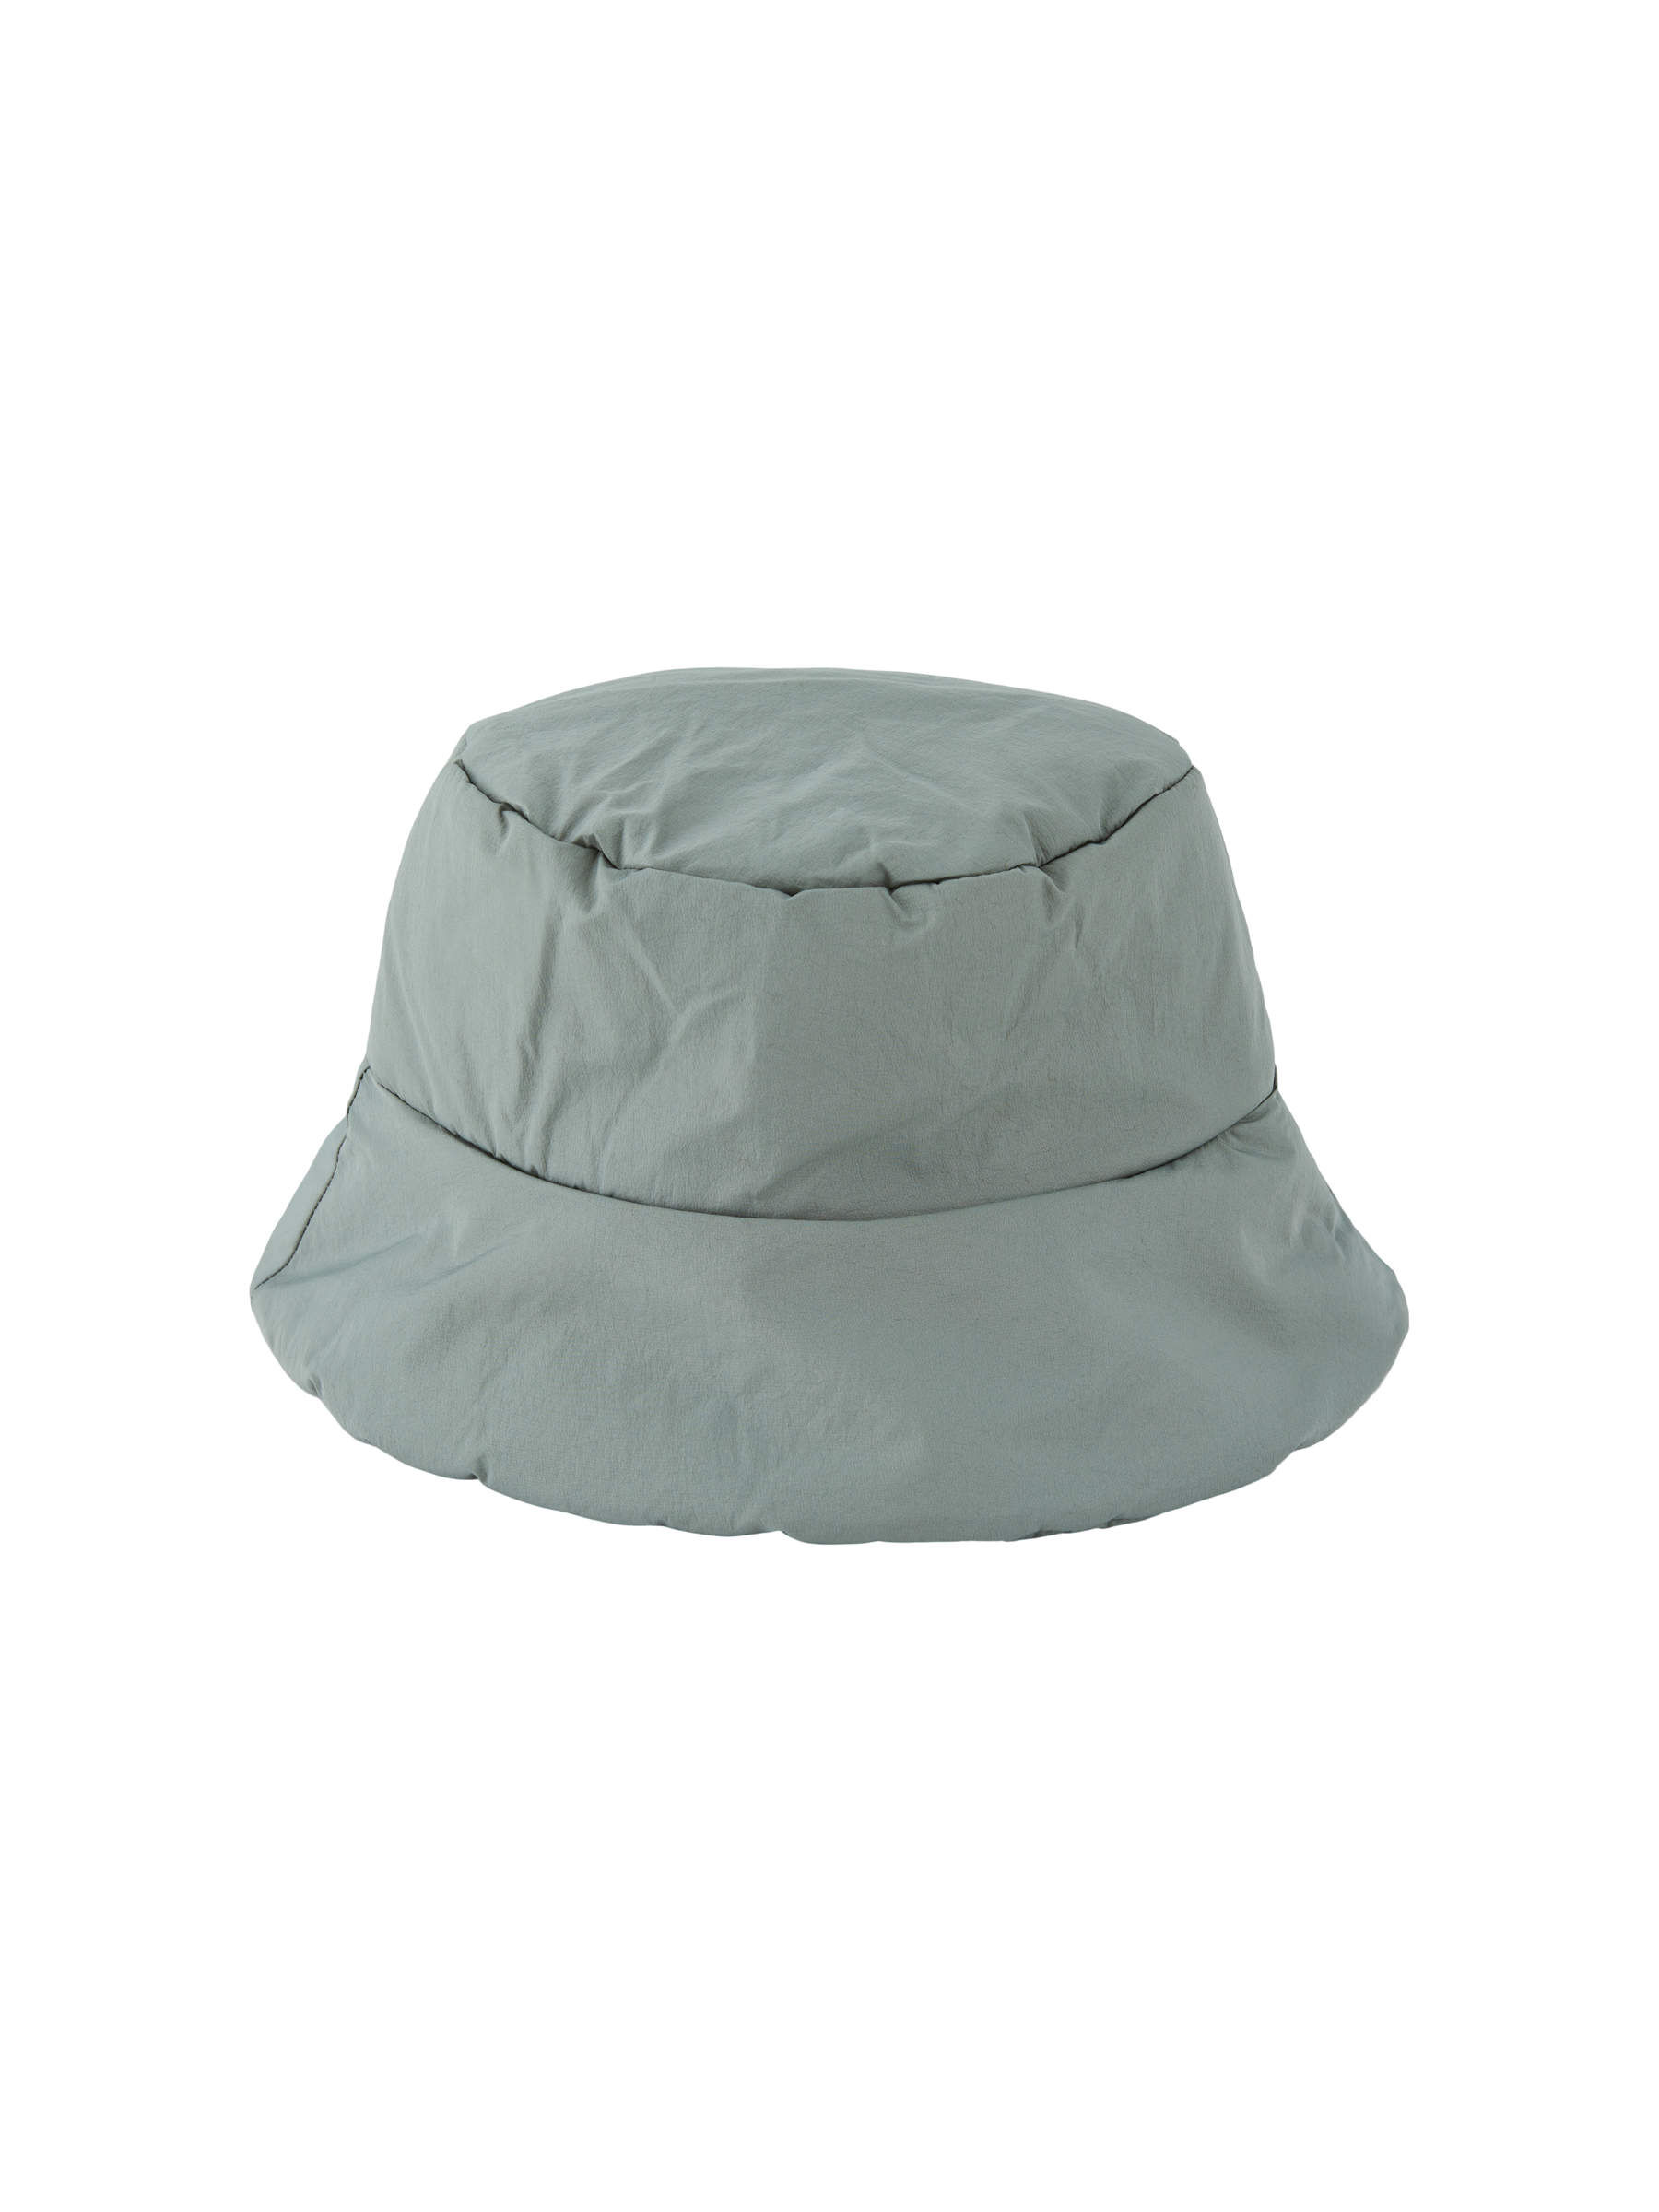 White top hat Accessoires Hoeden & petten Nette hoeden 